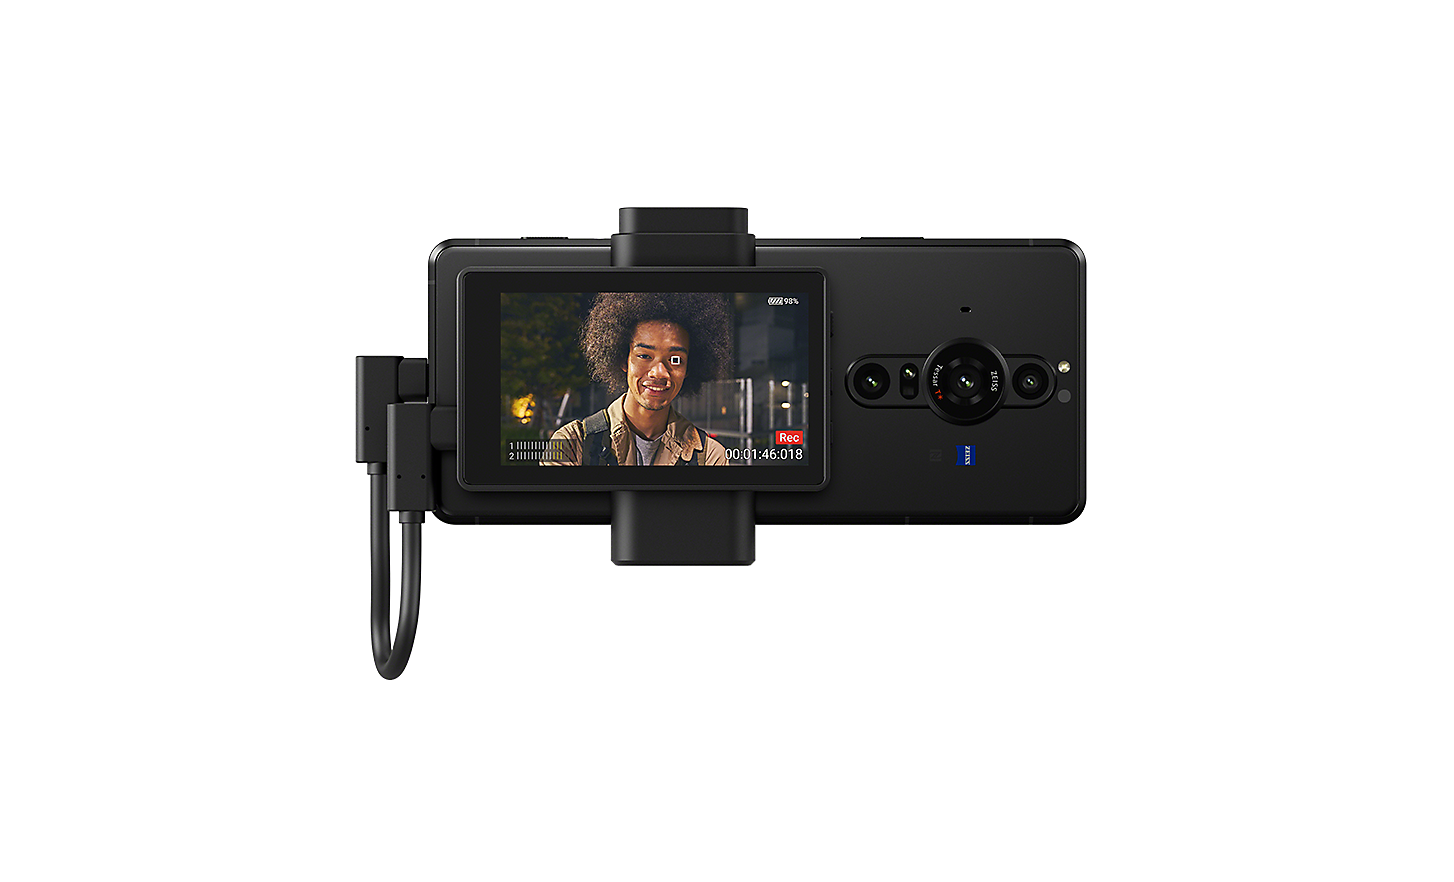 Monitor pentru vloguri pentru Xperia PRO-I, care afișează imaginea unui bărbat pe ecran